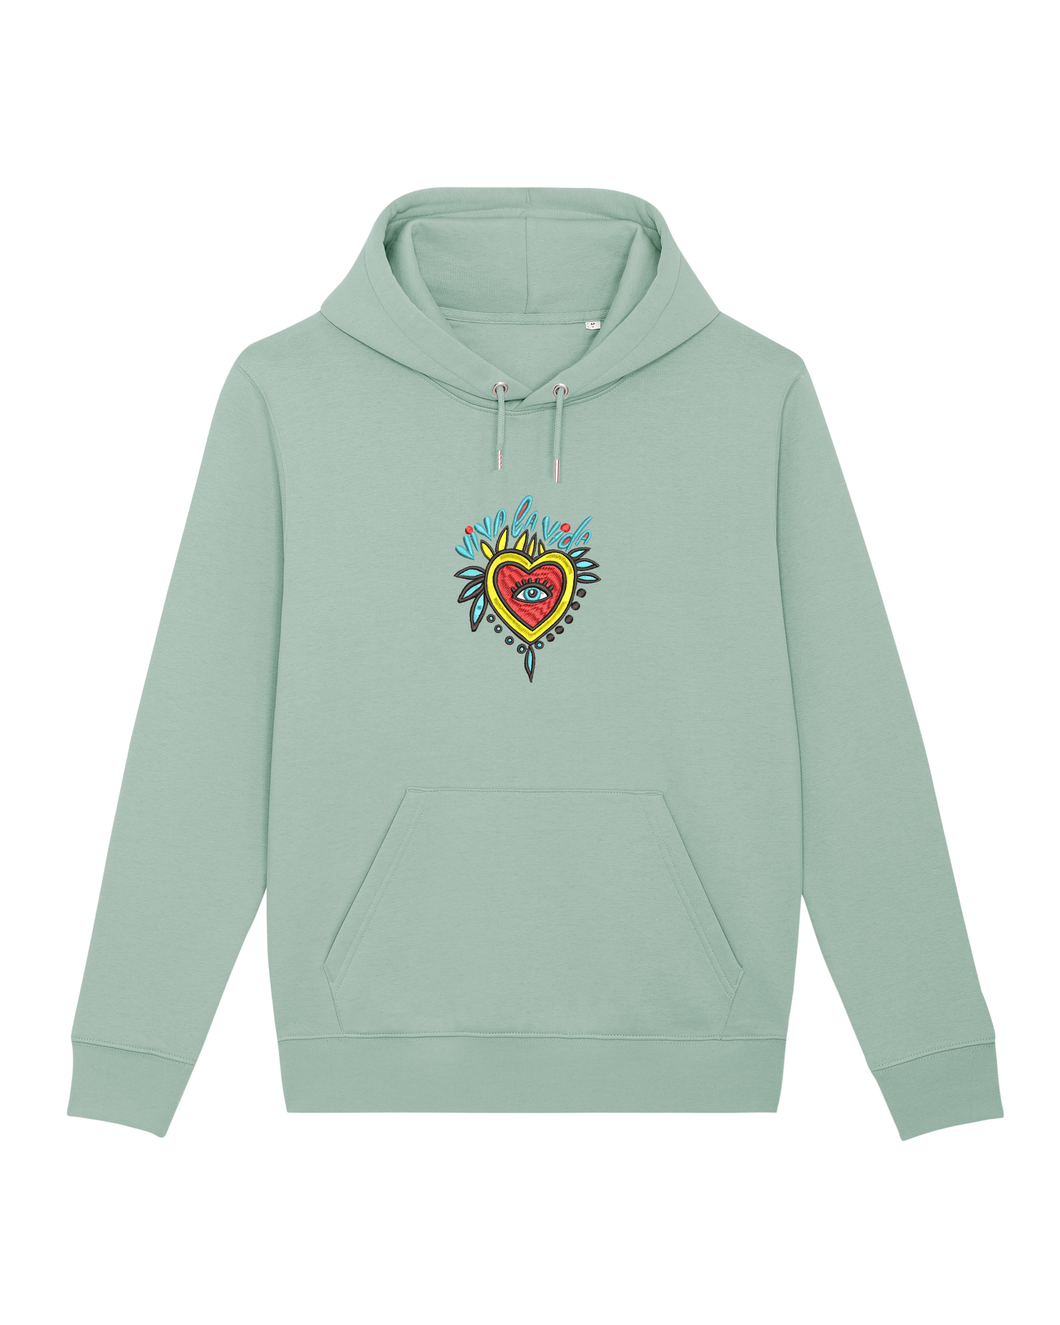 VIVA LA VIDA - Embroidered UNISEX hoodie